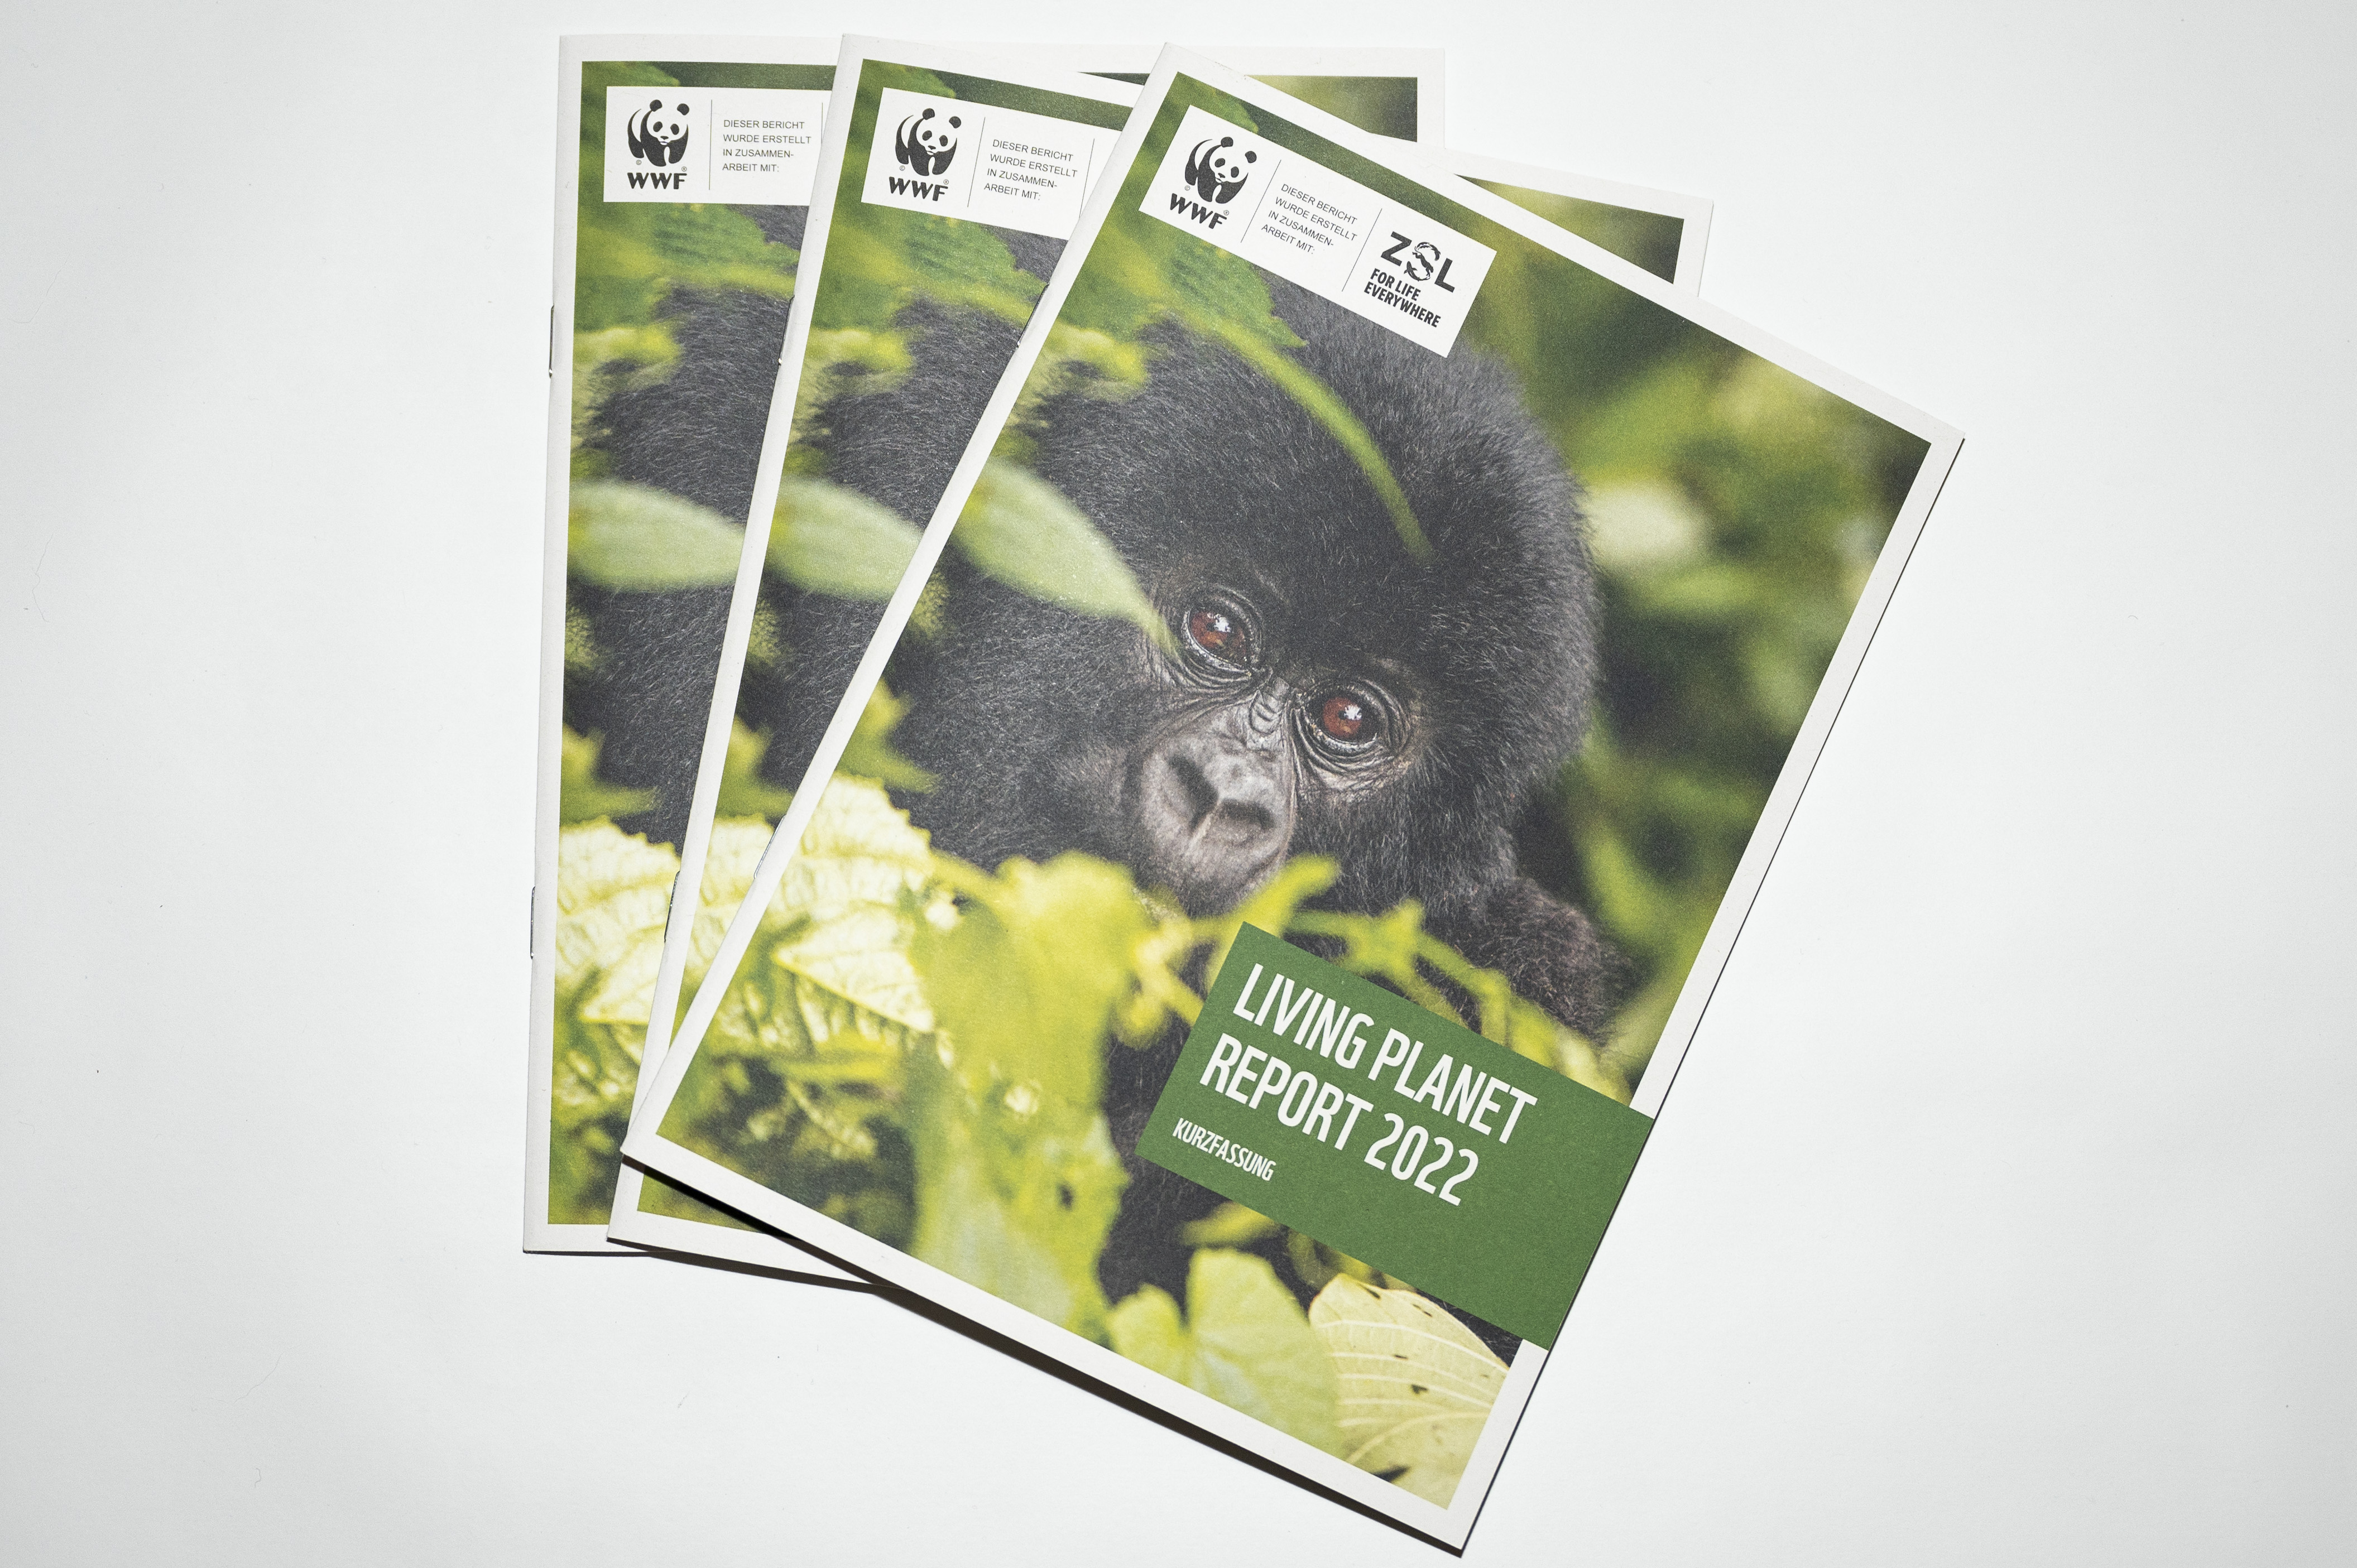 Drei Hefte liegen leicht überlappend übereinander. Auf dem Cover ist ein junger Gorilla zu sehen, der zwischen Blättern hervor schaut. Der Titel ist "Living Planet Report 2022". Links oben ist das WWF-Logo zu sehen. 